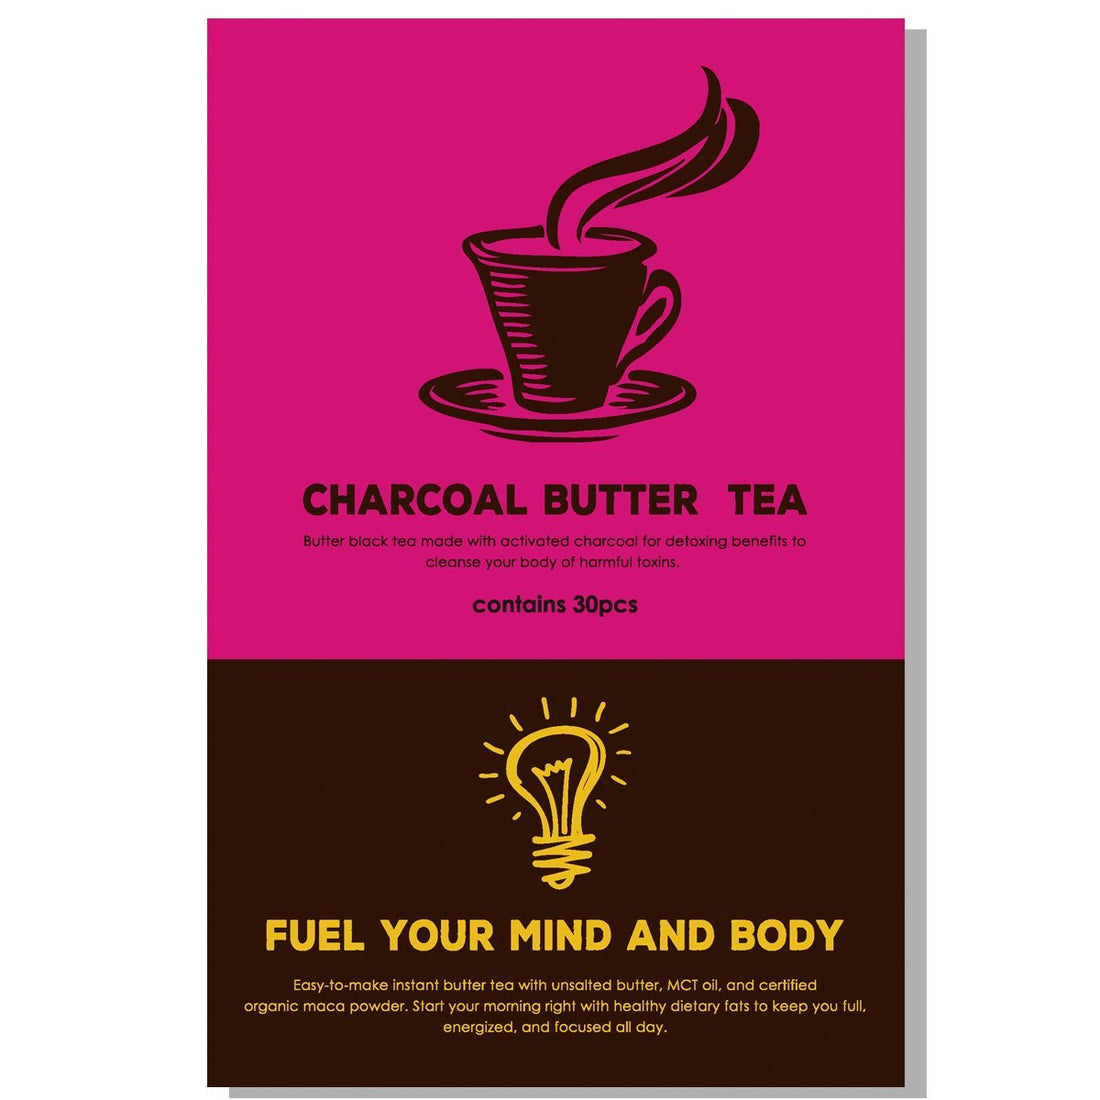 【爆誕】チャコールバター紅茶登場、開発の流れや美味しさについて語ります。 | ミウラタクヤ商店